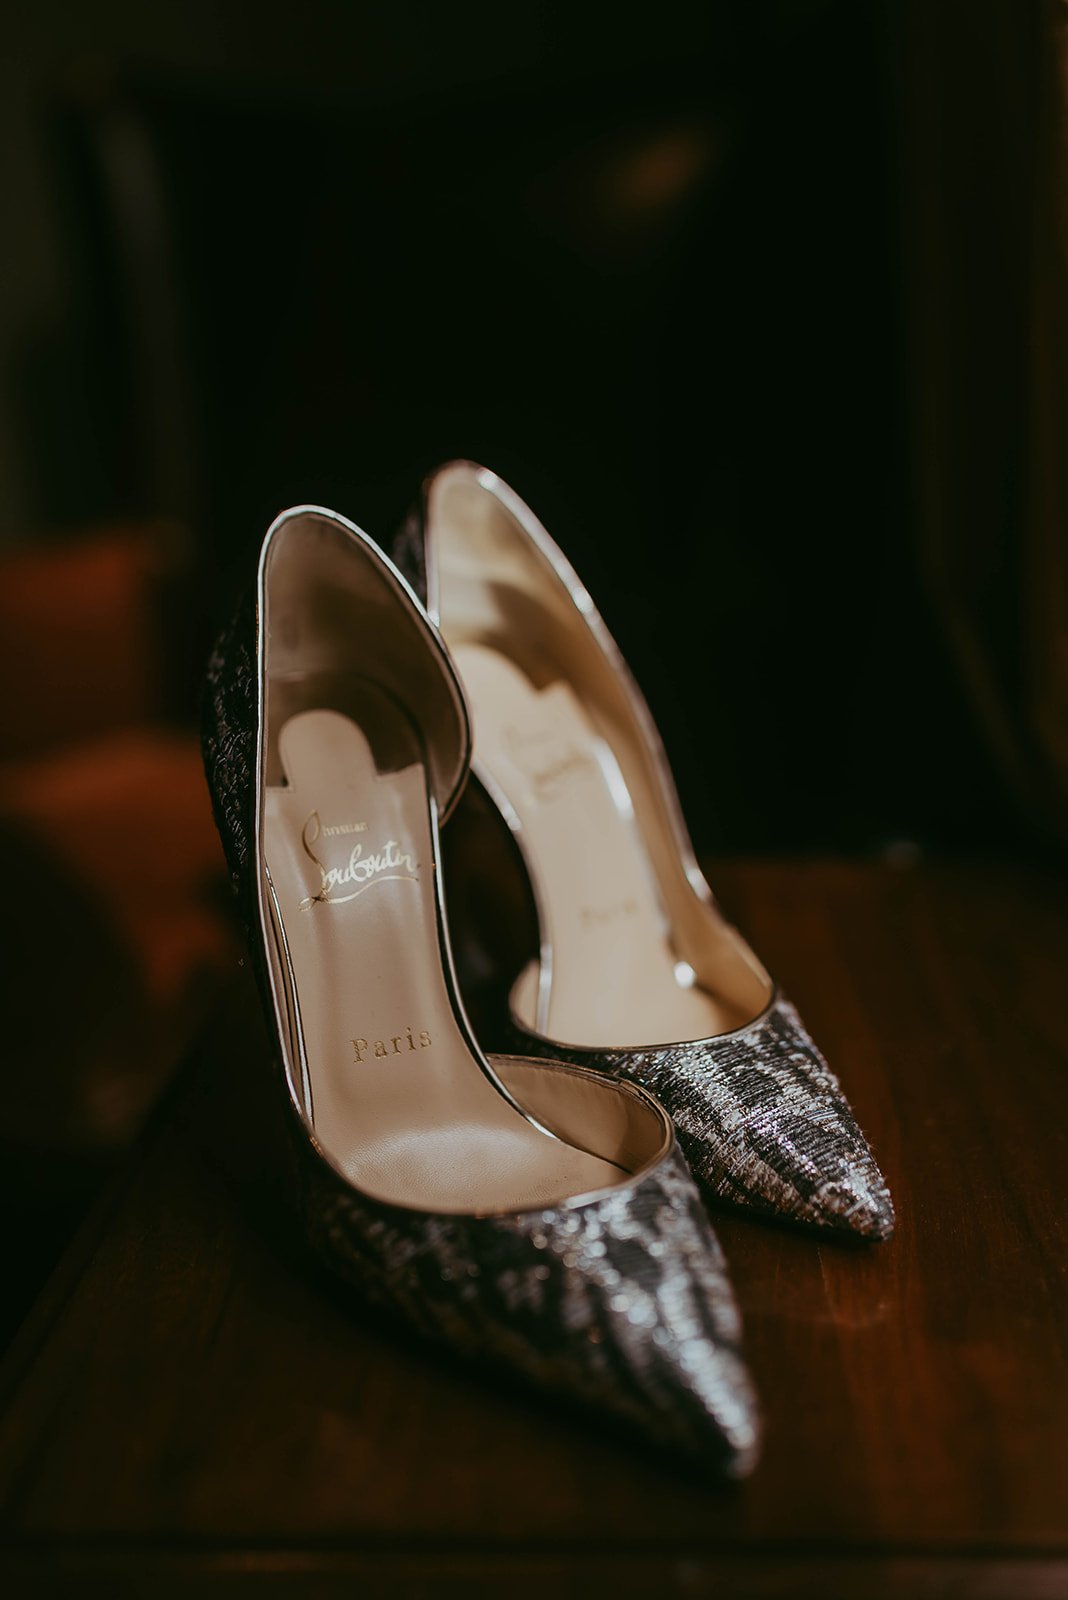 toronto-summer-wedding-granite-brewery-bride-getting-ready-louboutin-heels.jpg